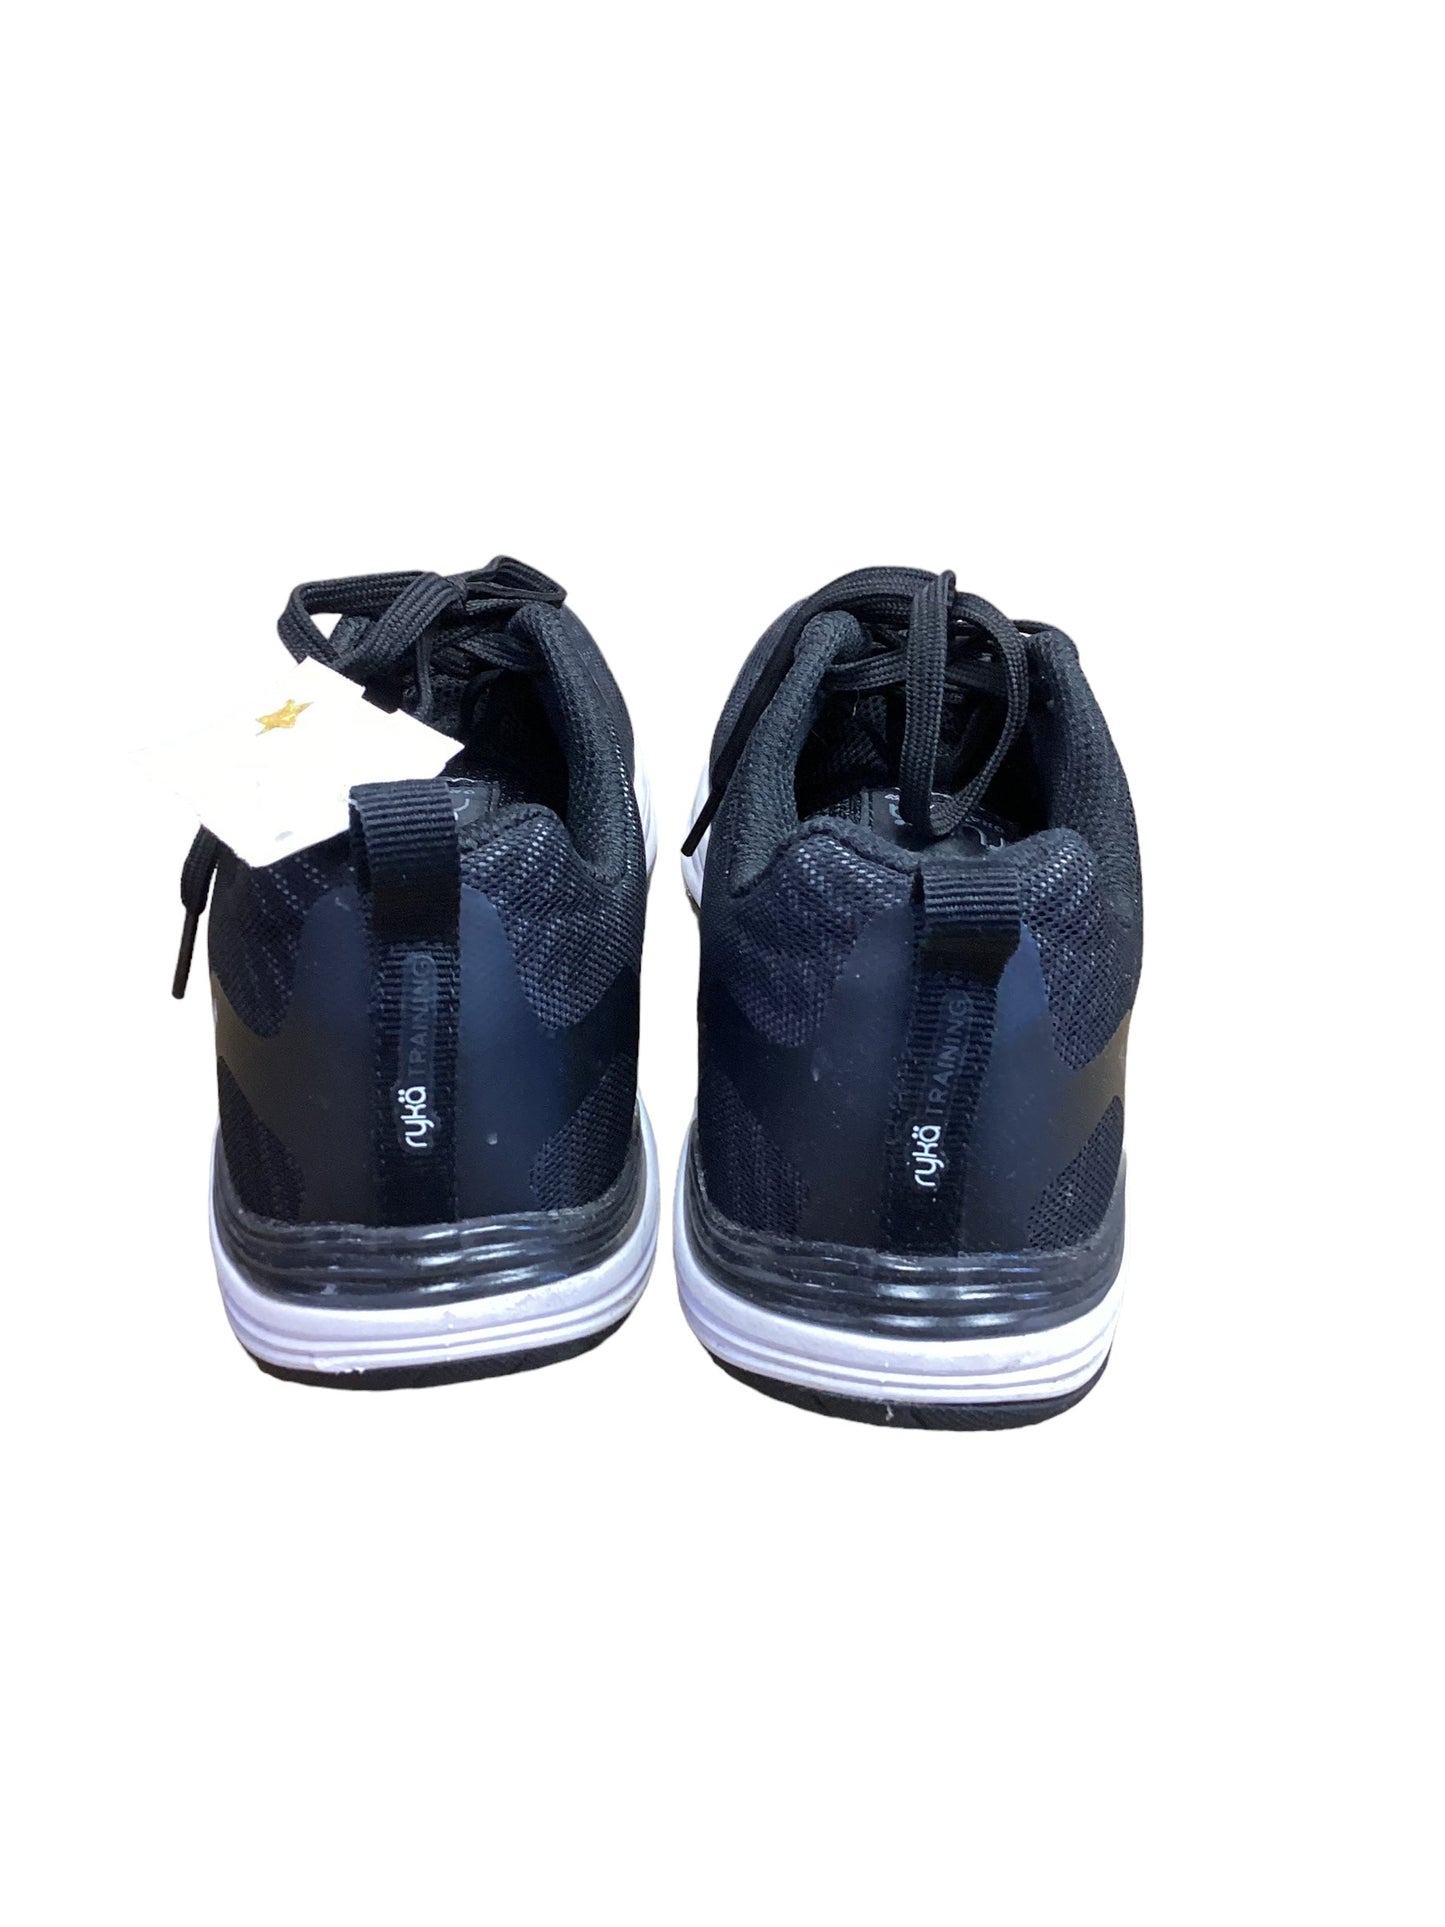 Black Shoes Athletic Ryka, Size 8.5